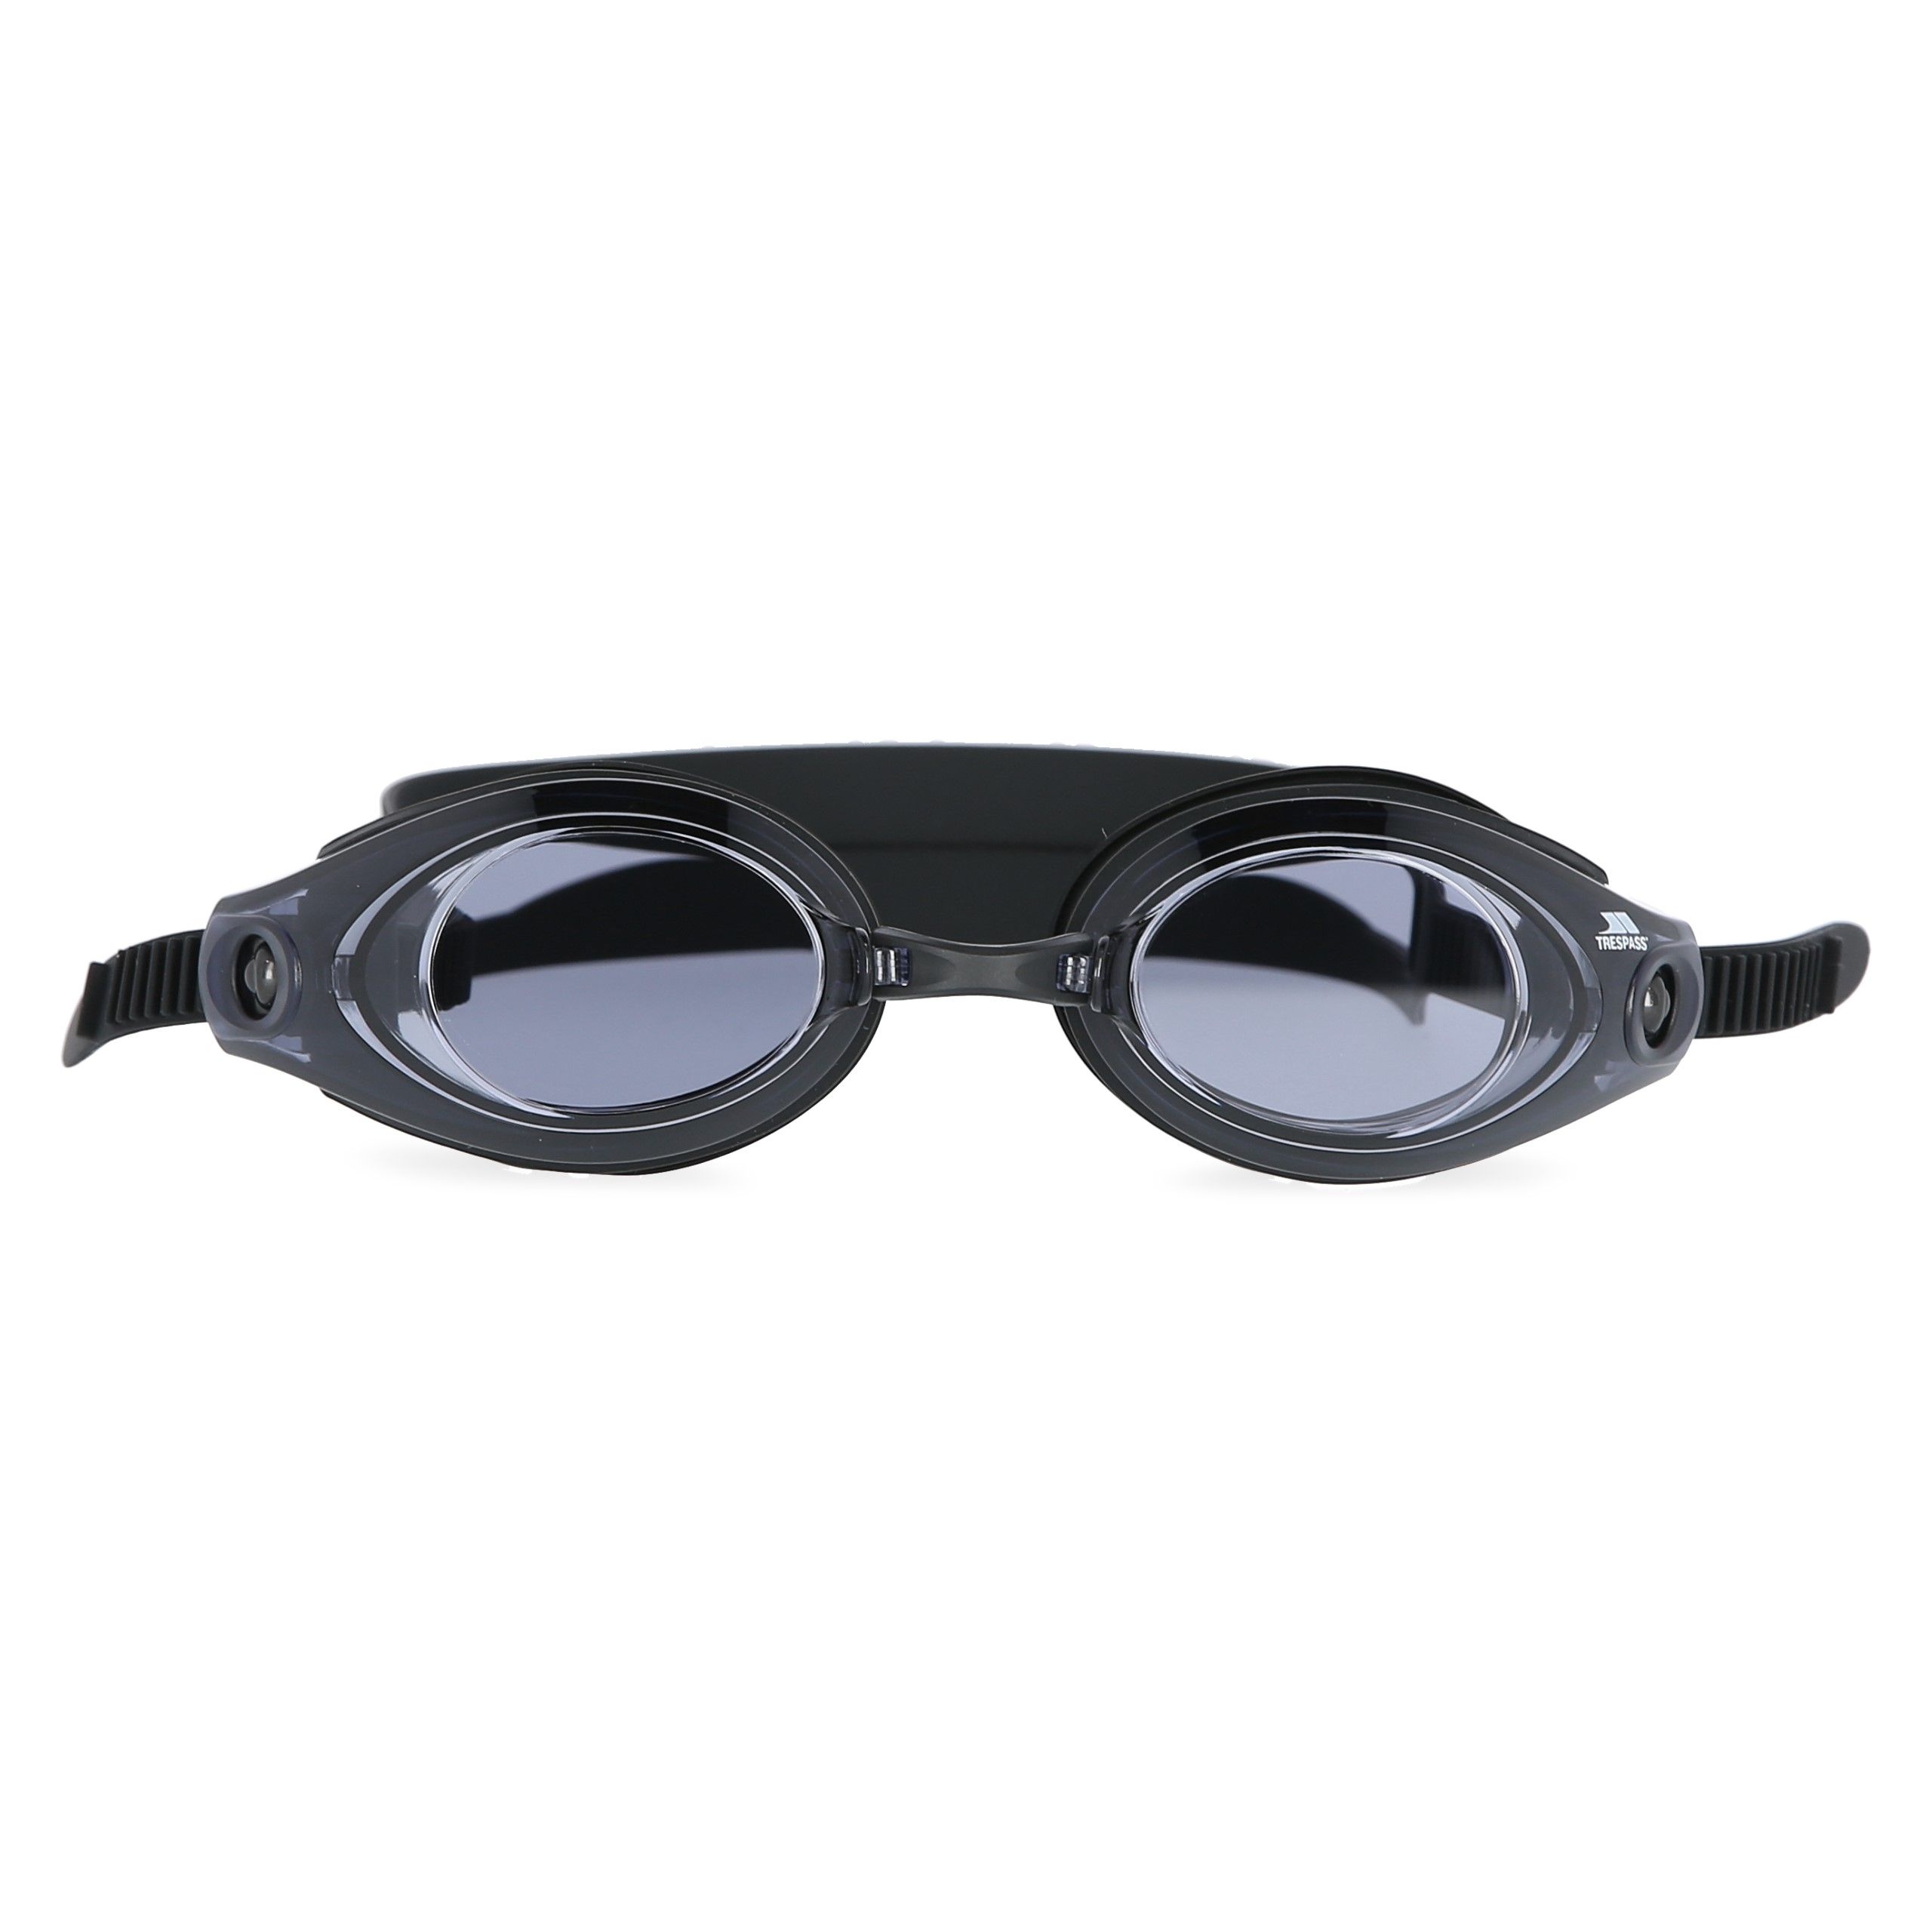 Aquatic Swimming Goggles